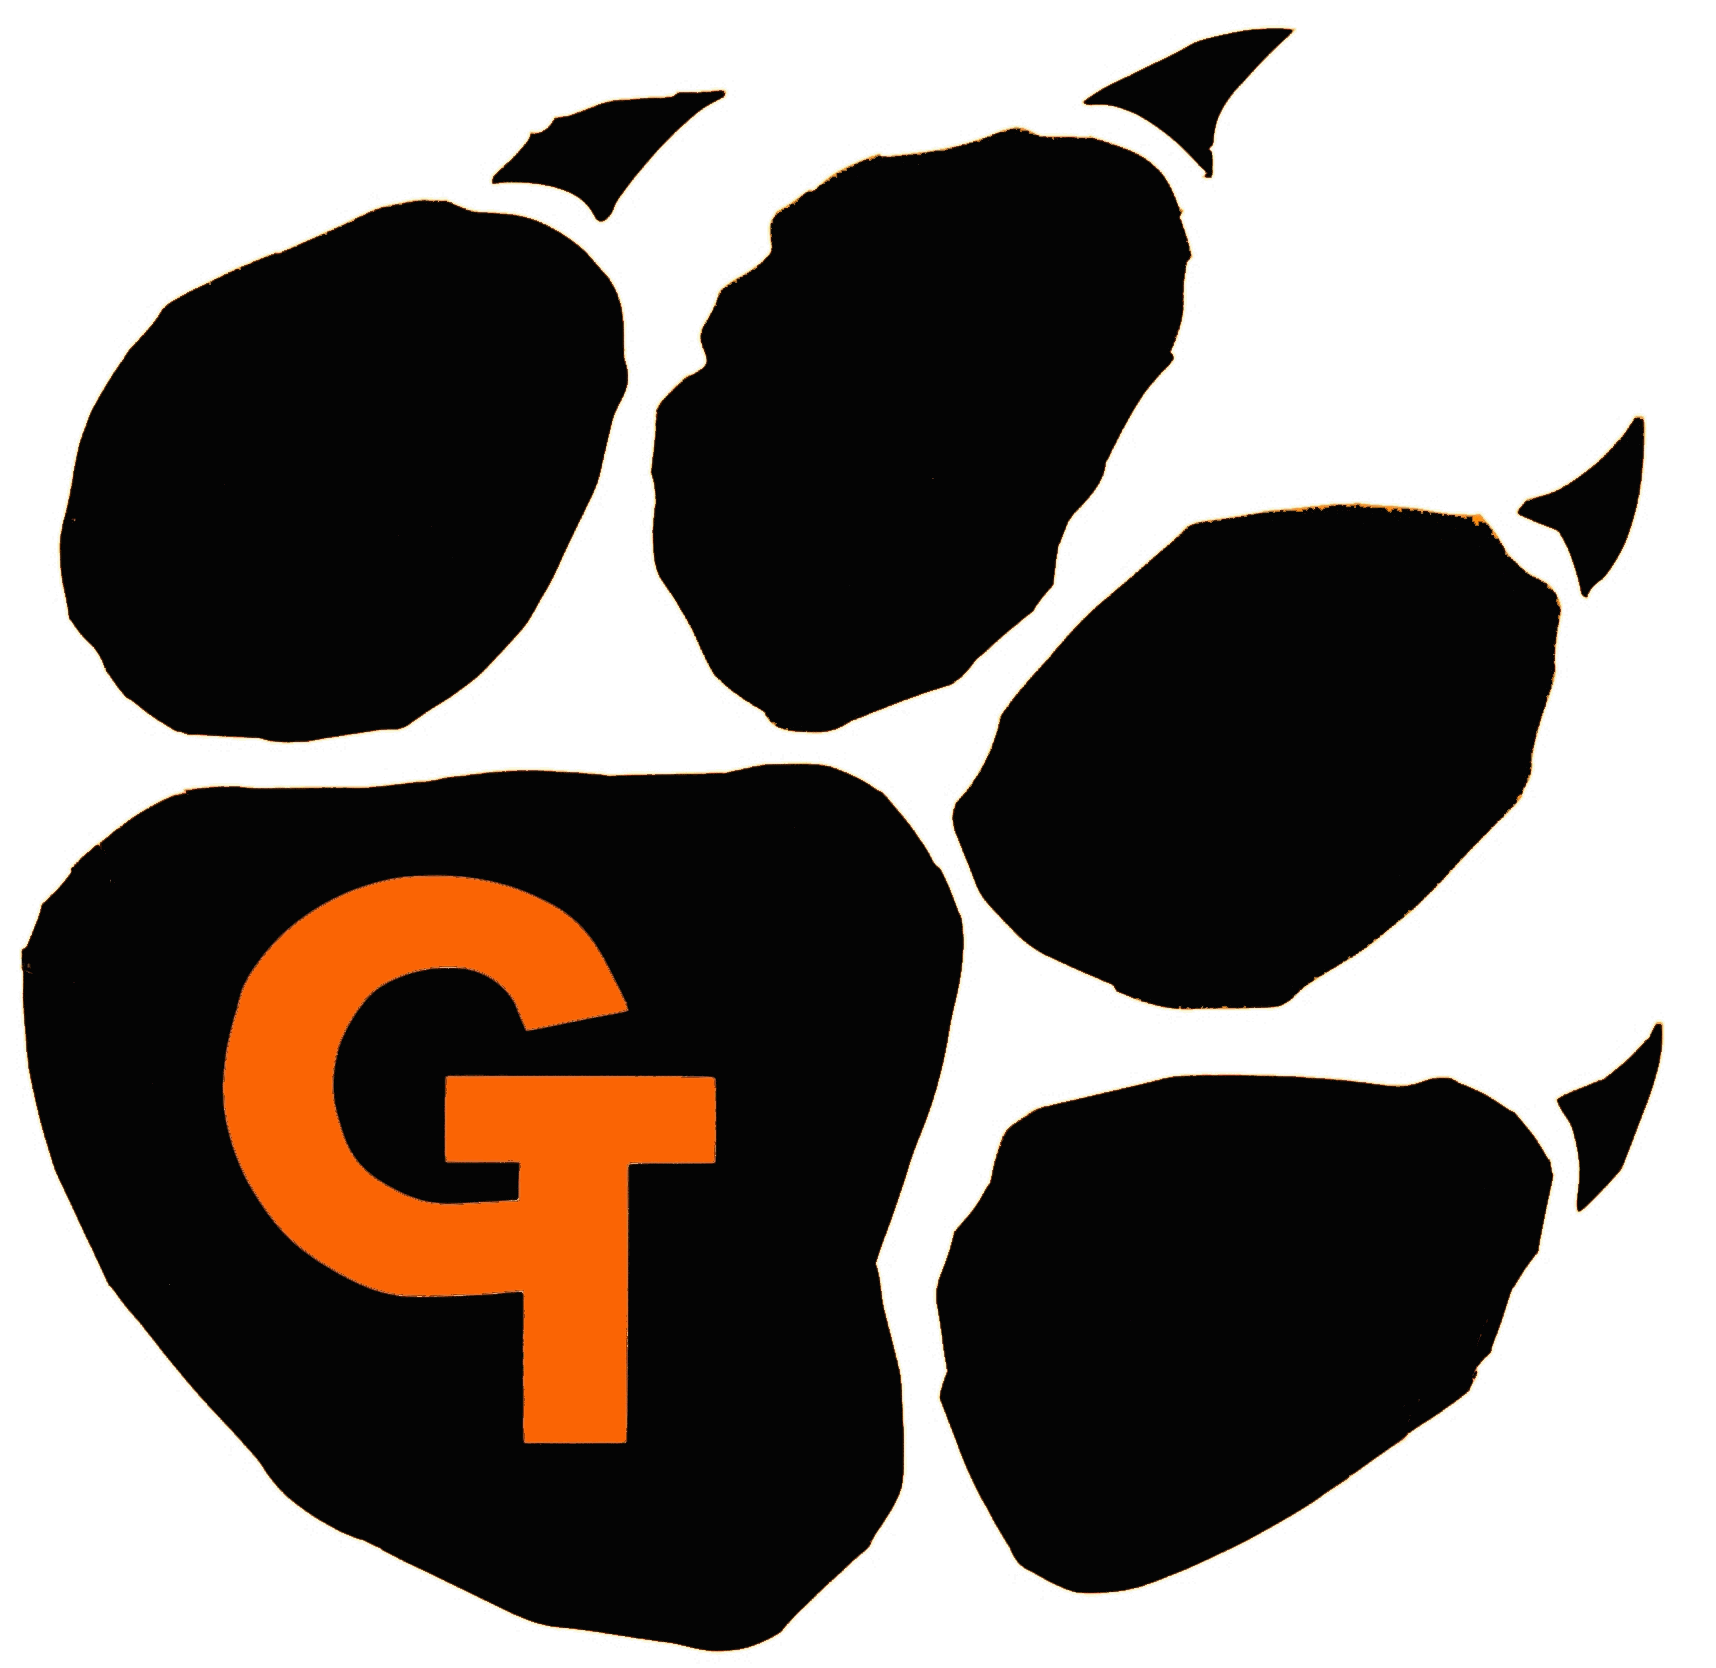 Tiger Paw Logo - Tiger Paw Print Logo free image